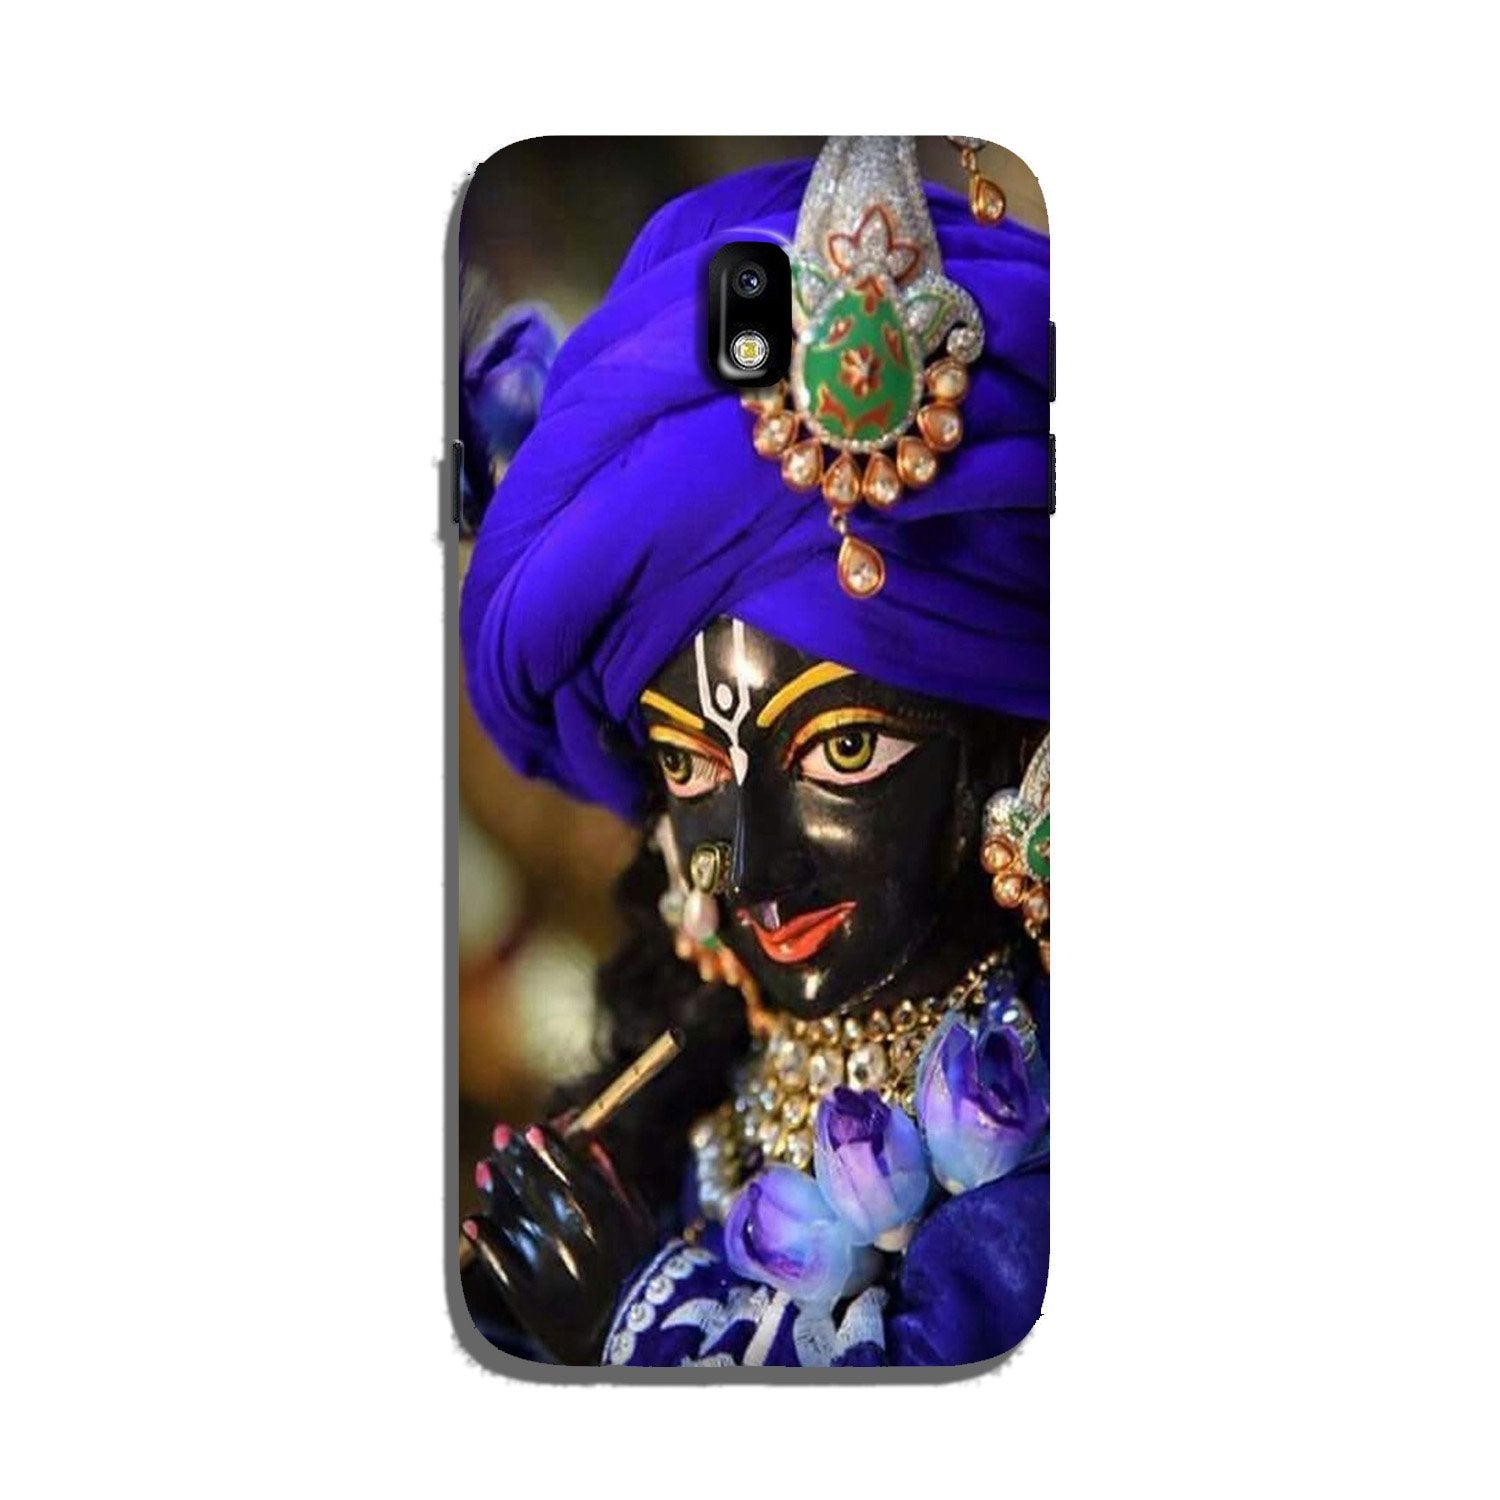 Lord Krishna4 Case for Galaxy J3 Pro